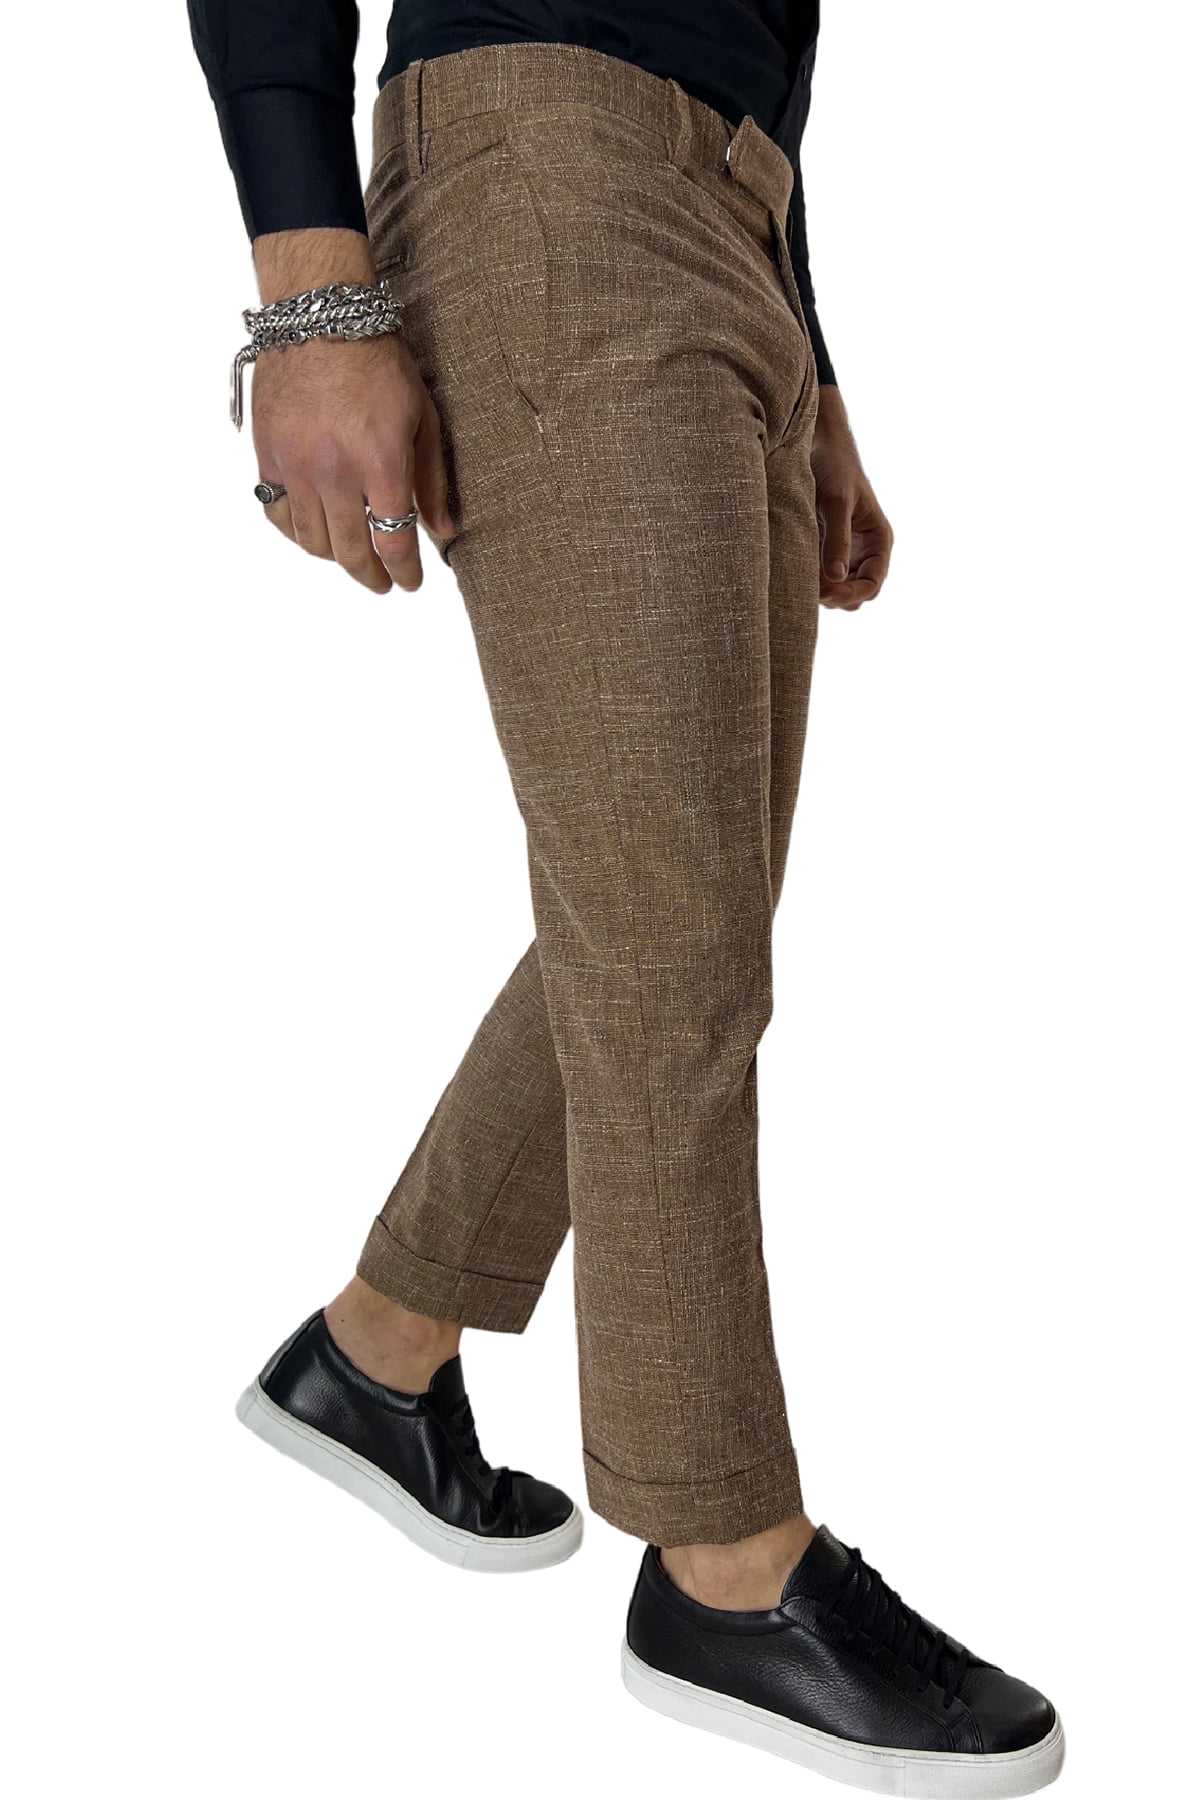 Pantalone uomo marrone in lino tasca a filo slim fit sartoriale con trama bianca all interno